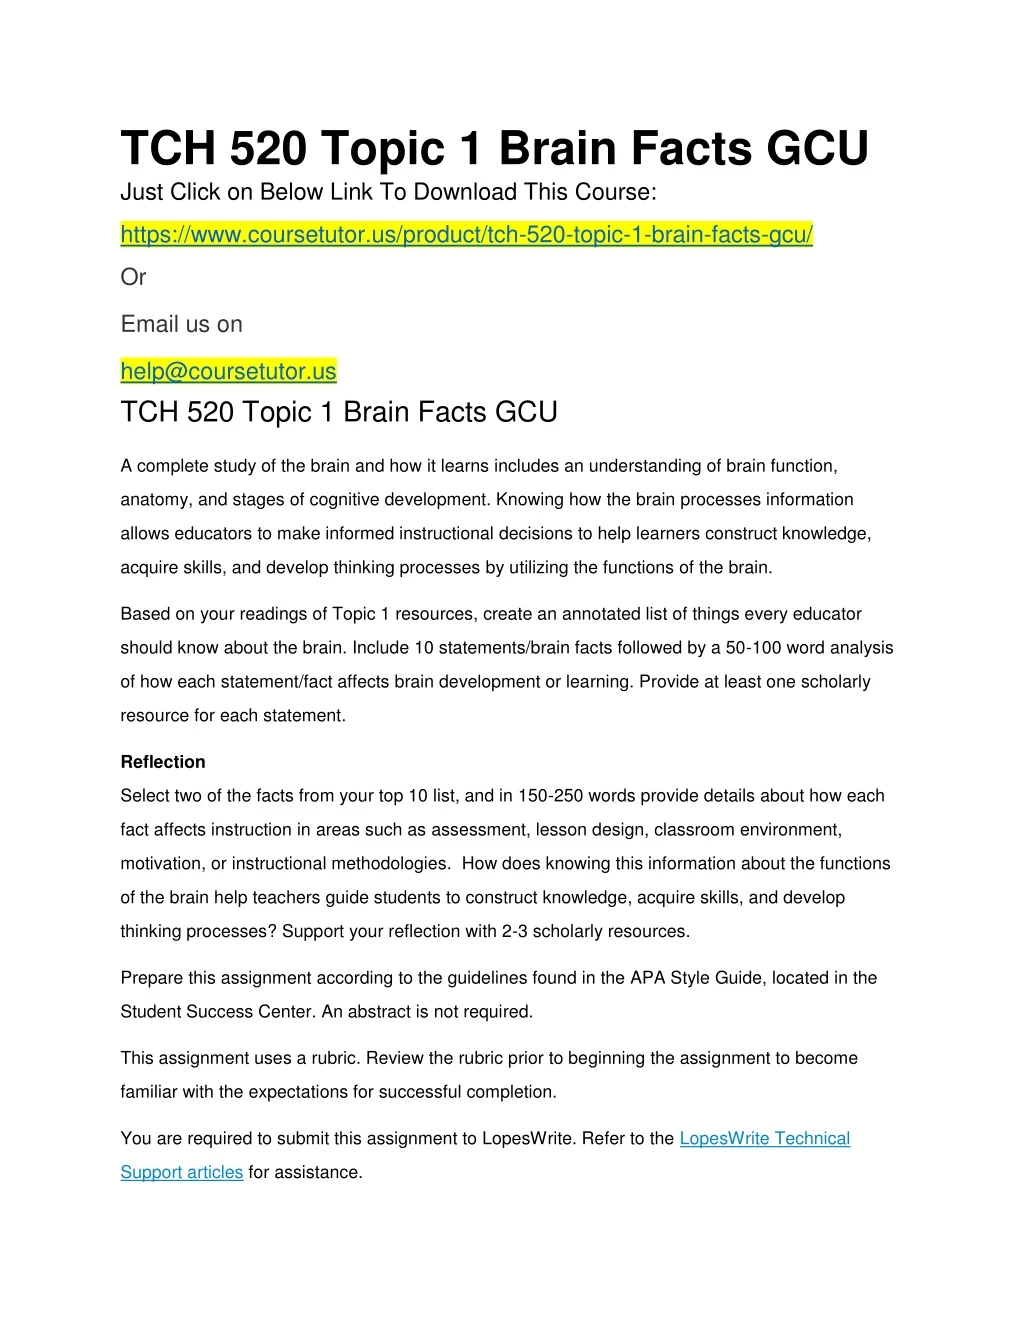 tch 520 topic 1 brain facts gcu just click